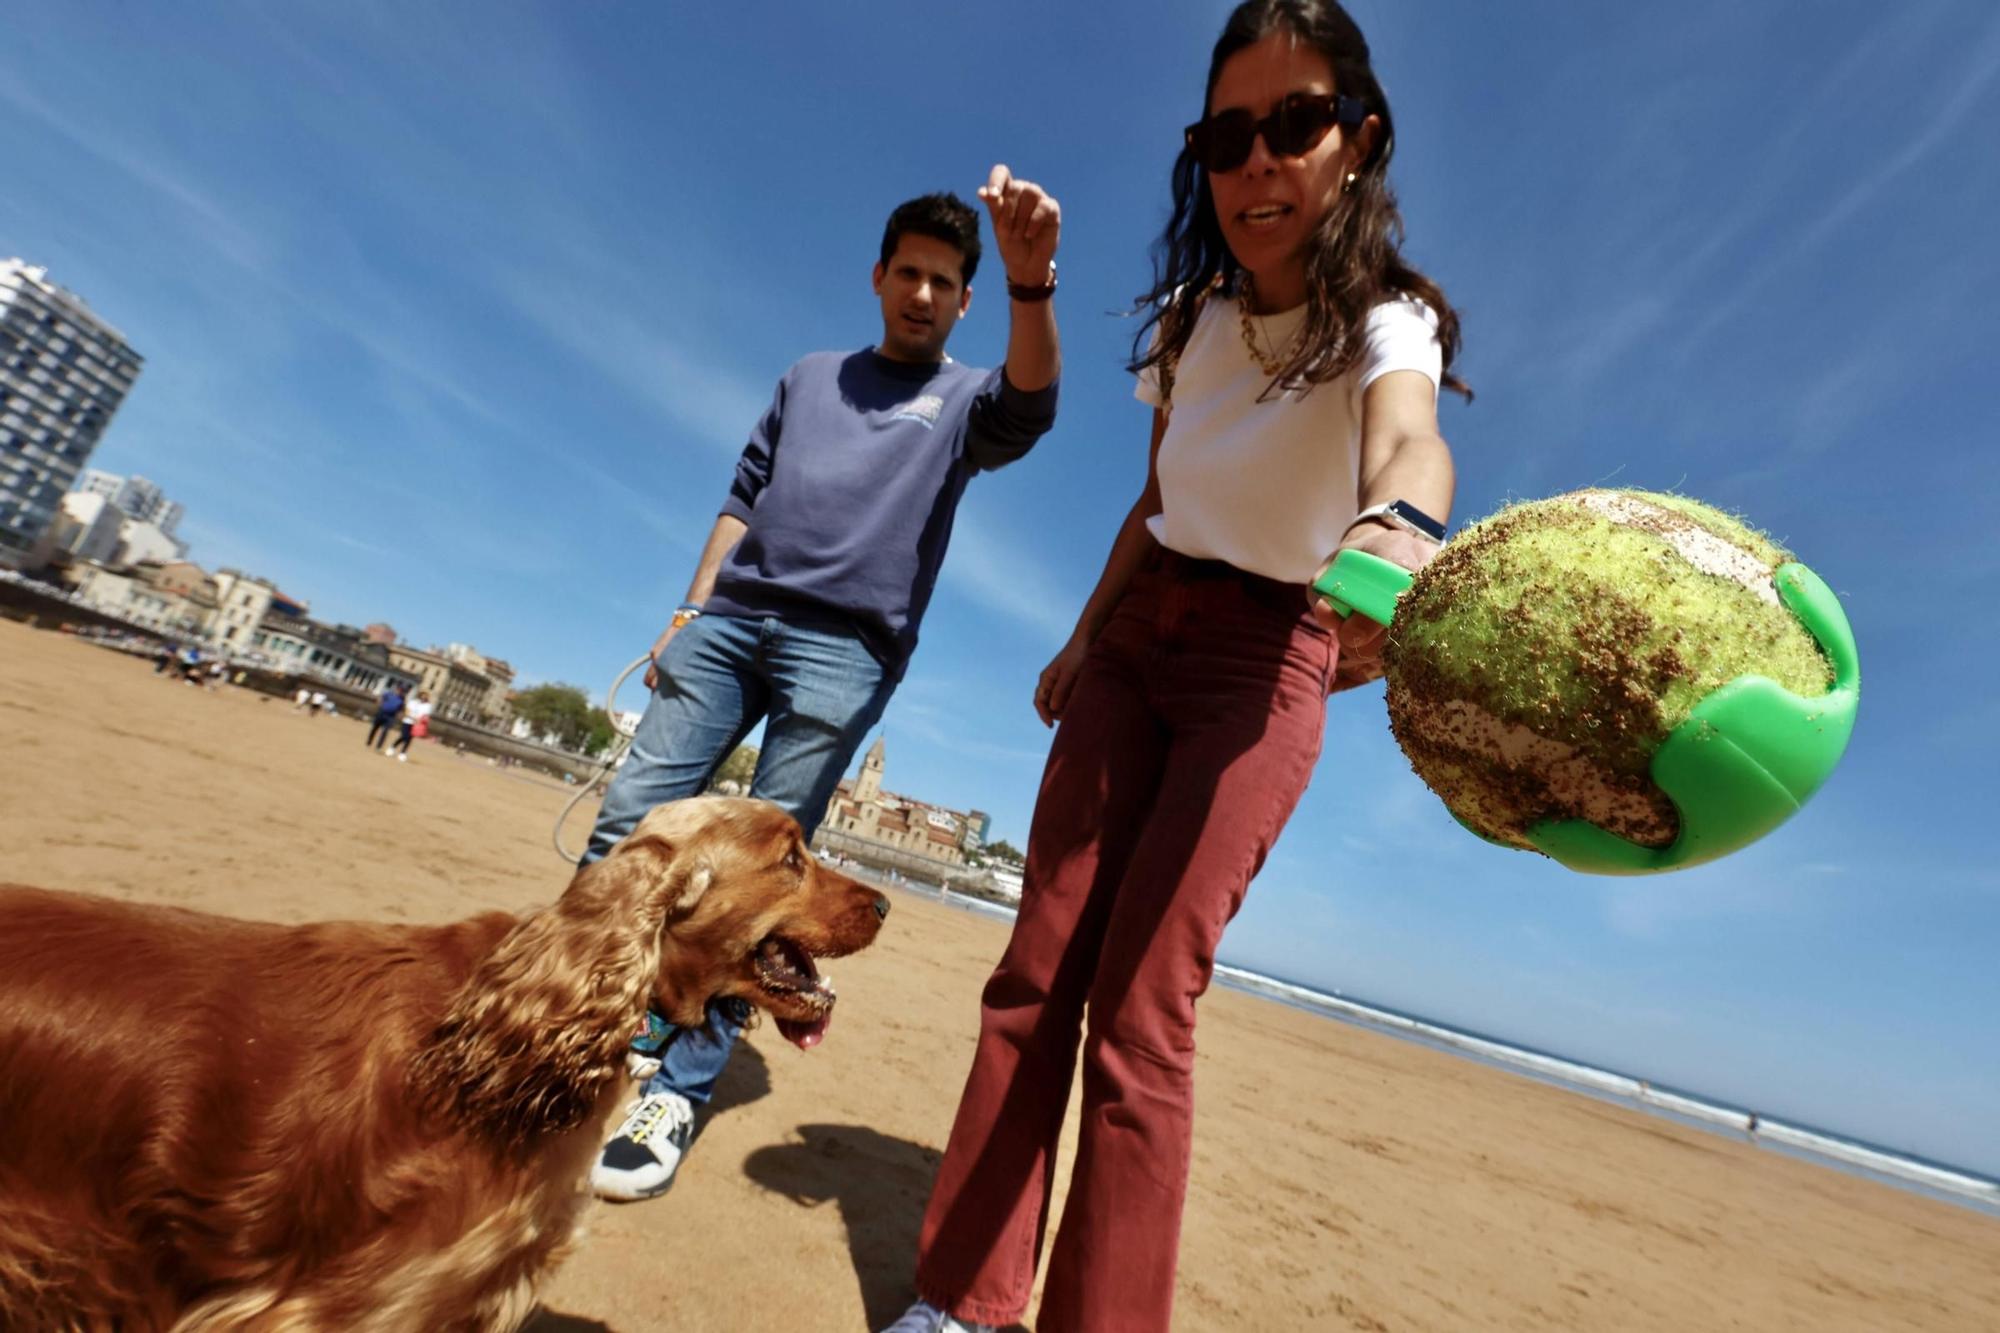 Ambiente playero en Gijón tras otra jornada de sol y calor (en imágenes)